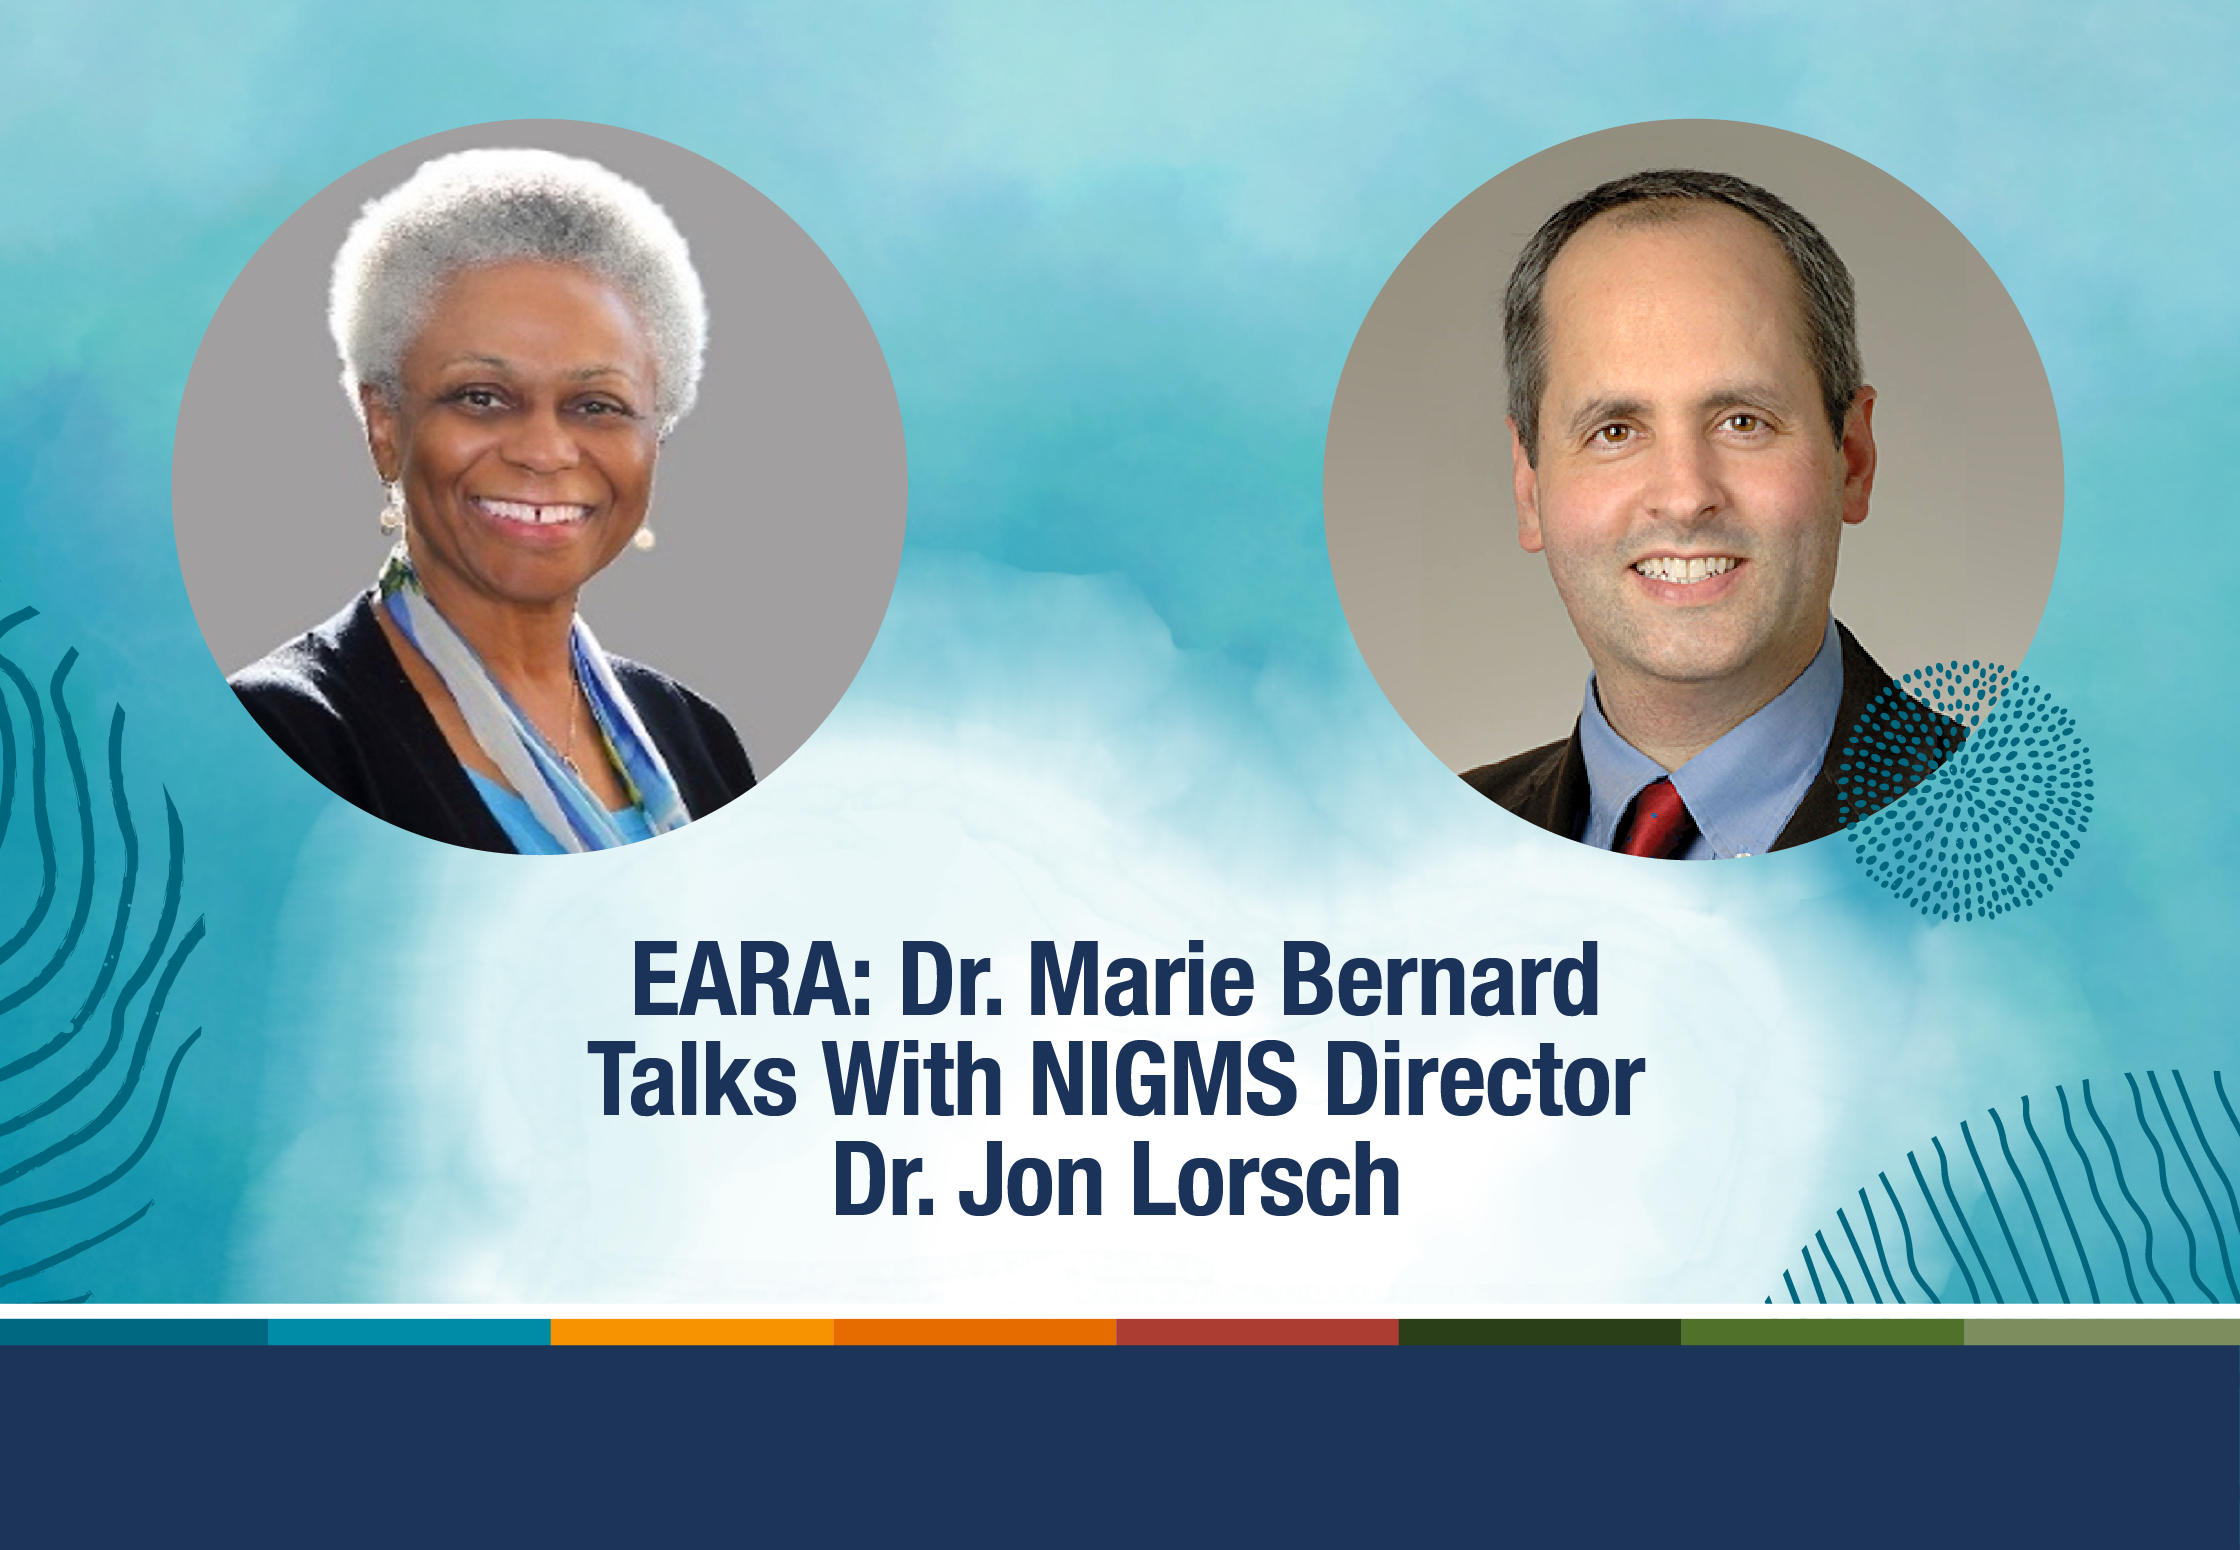  EARA: Dr. Marie Bernard Talks With NIGMS Director Dr. Jon Lorsch. Images of Dr. Bernard and Dr. Lorsch.